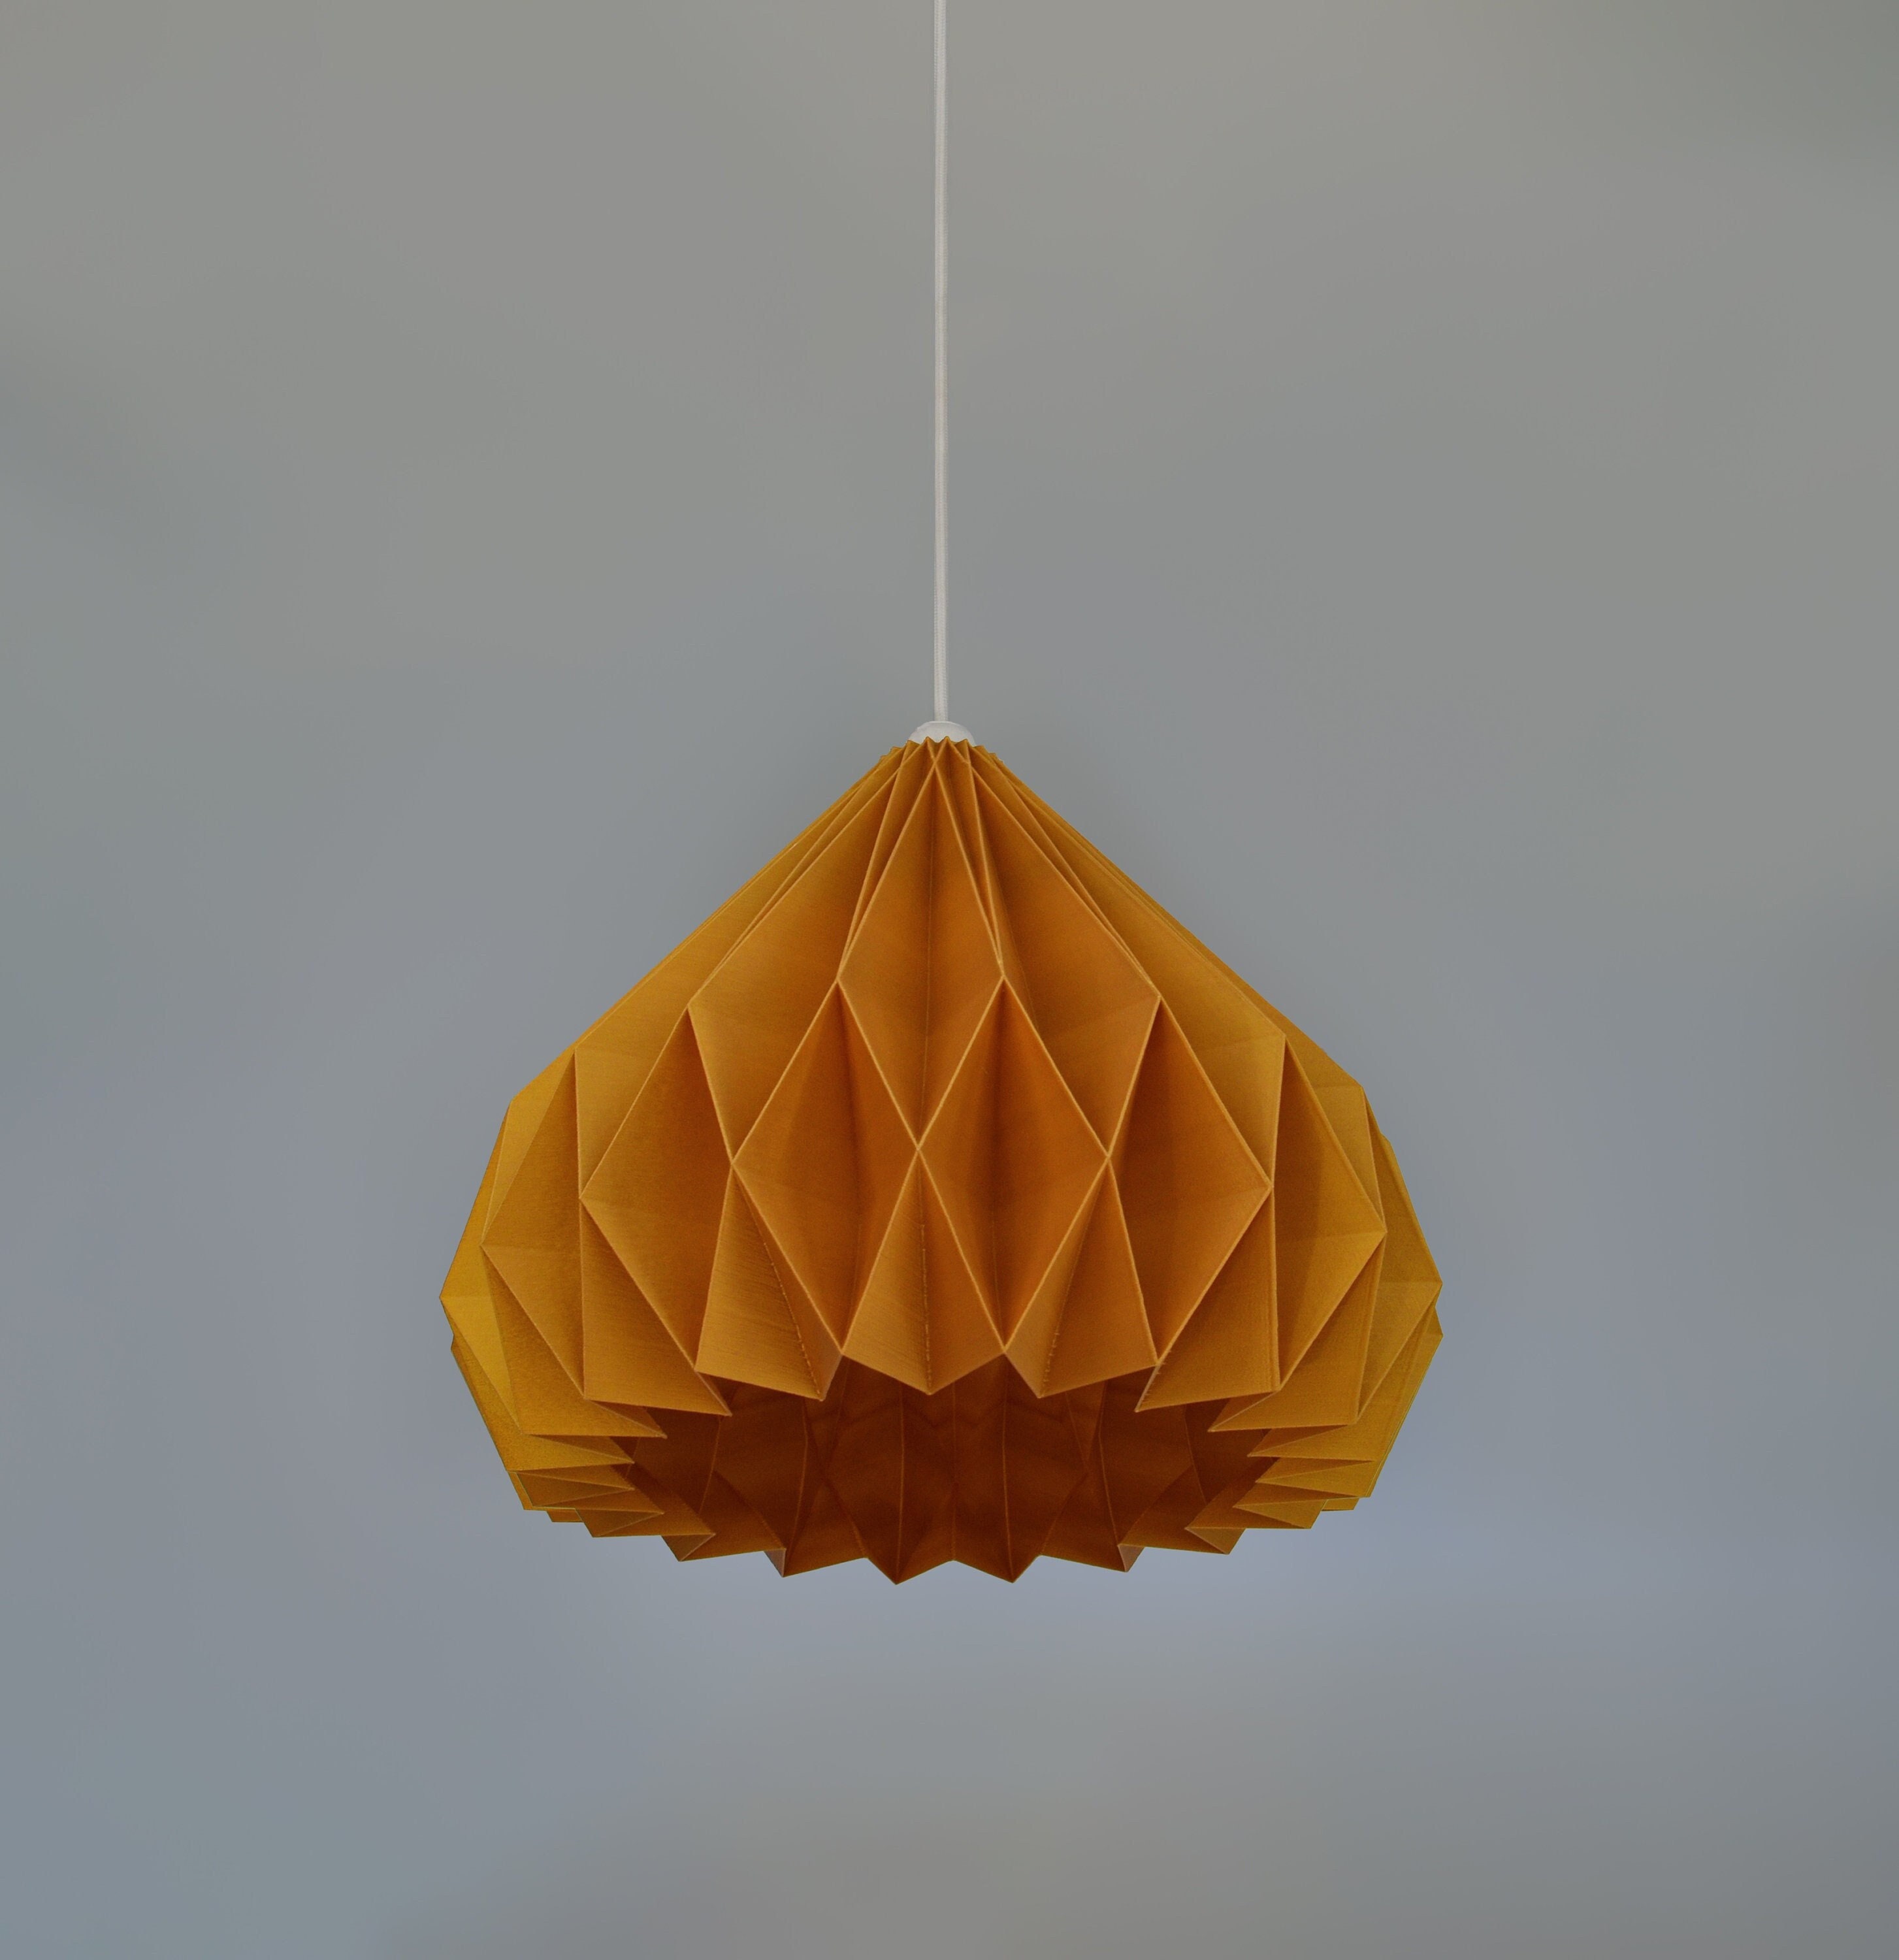 Origami : étoile dorée - La ruche à idées